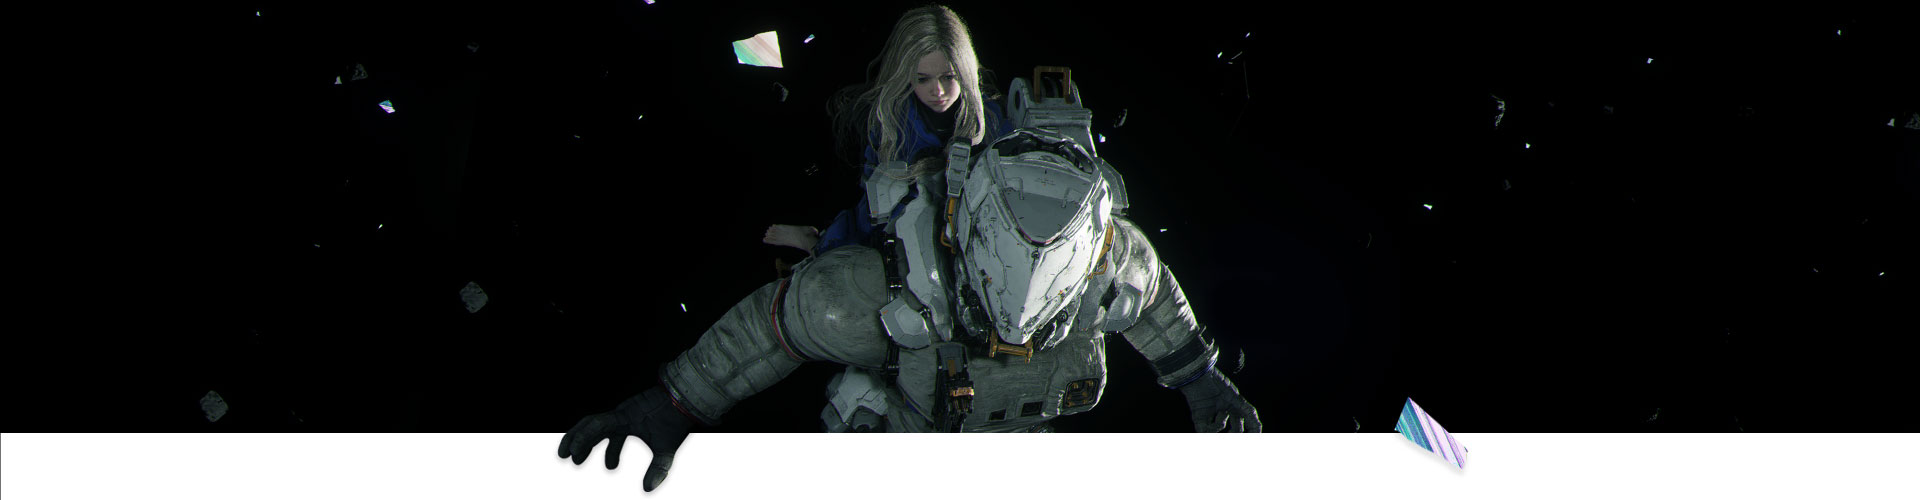 En flicka som rider på en astronaut genom rymden